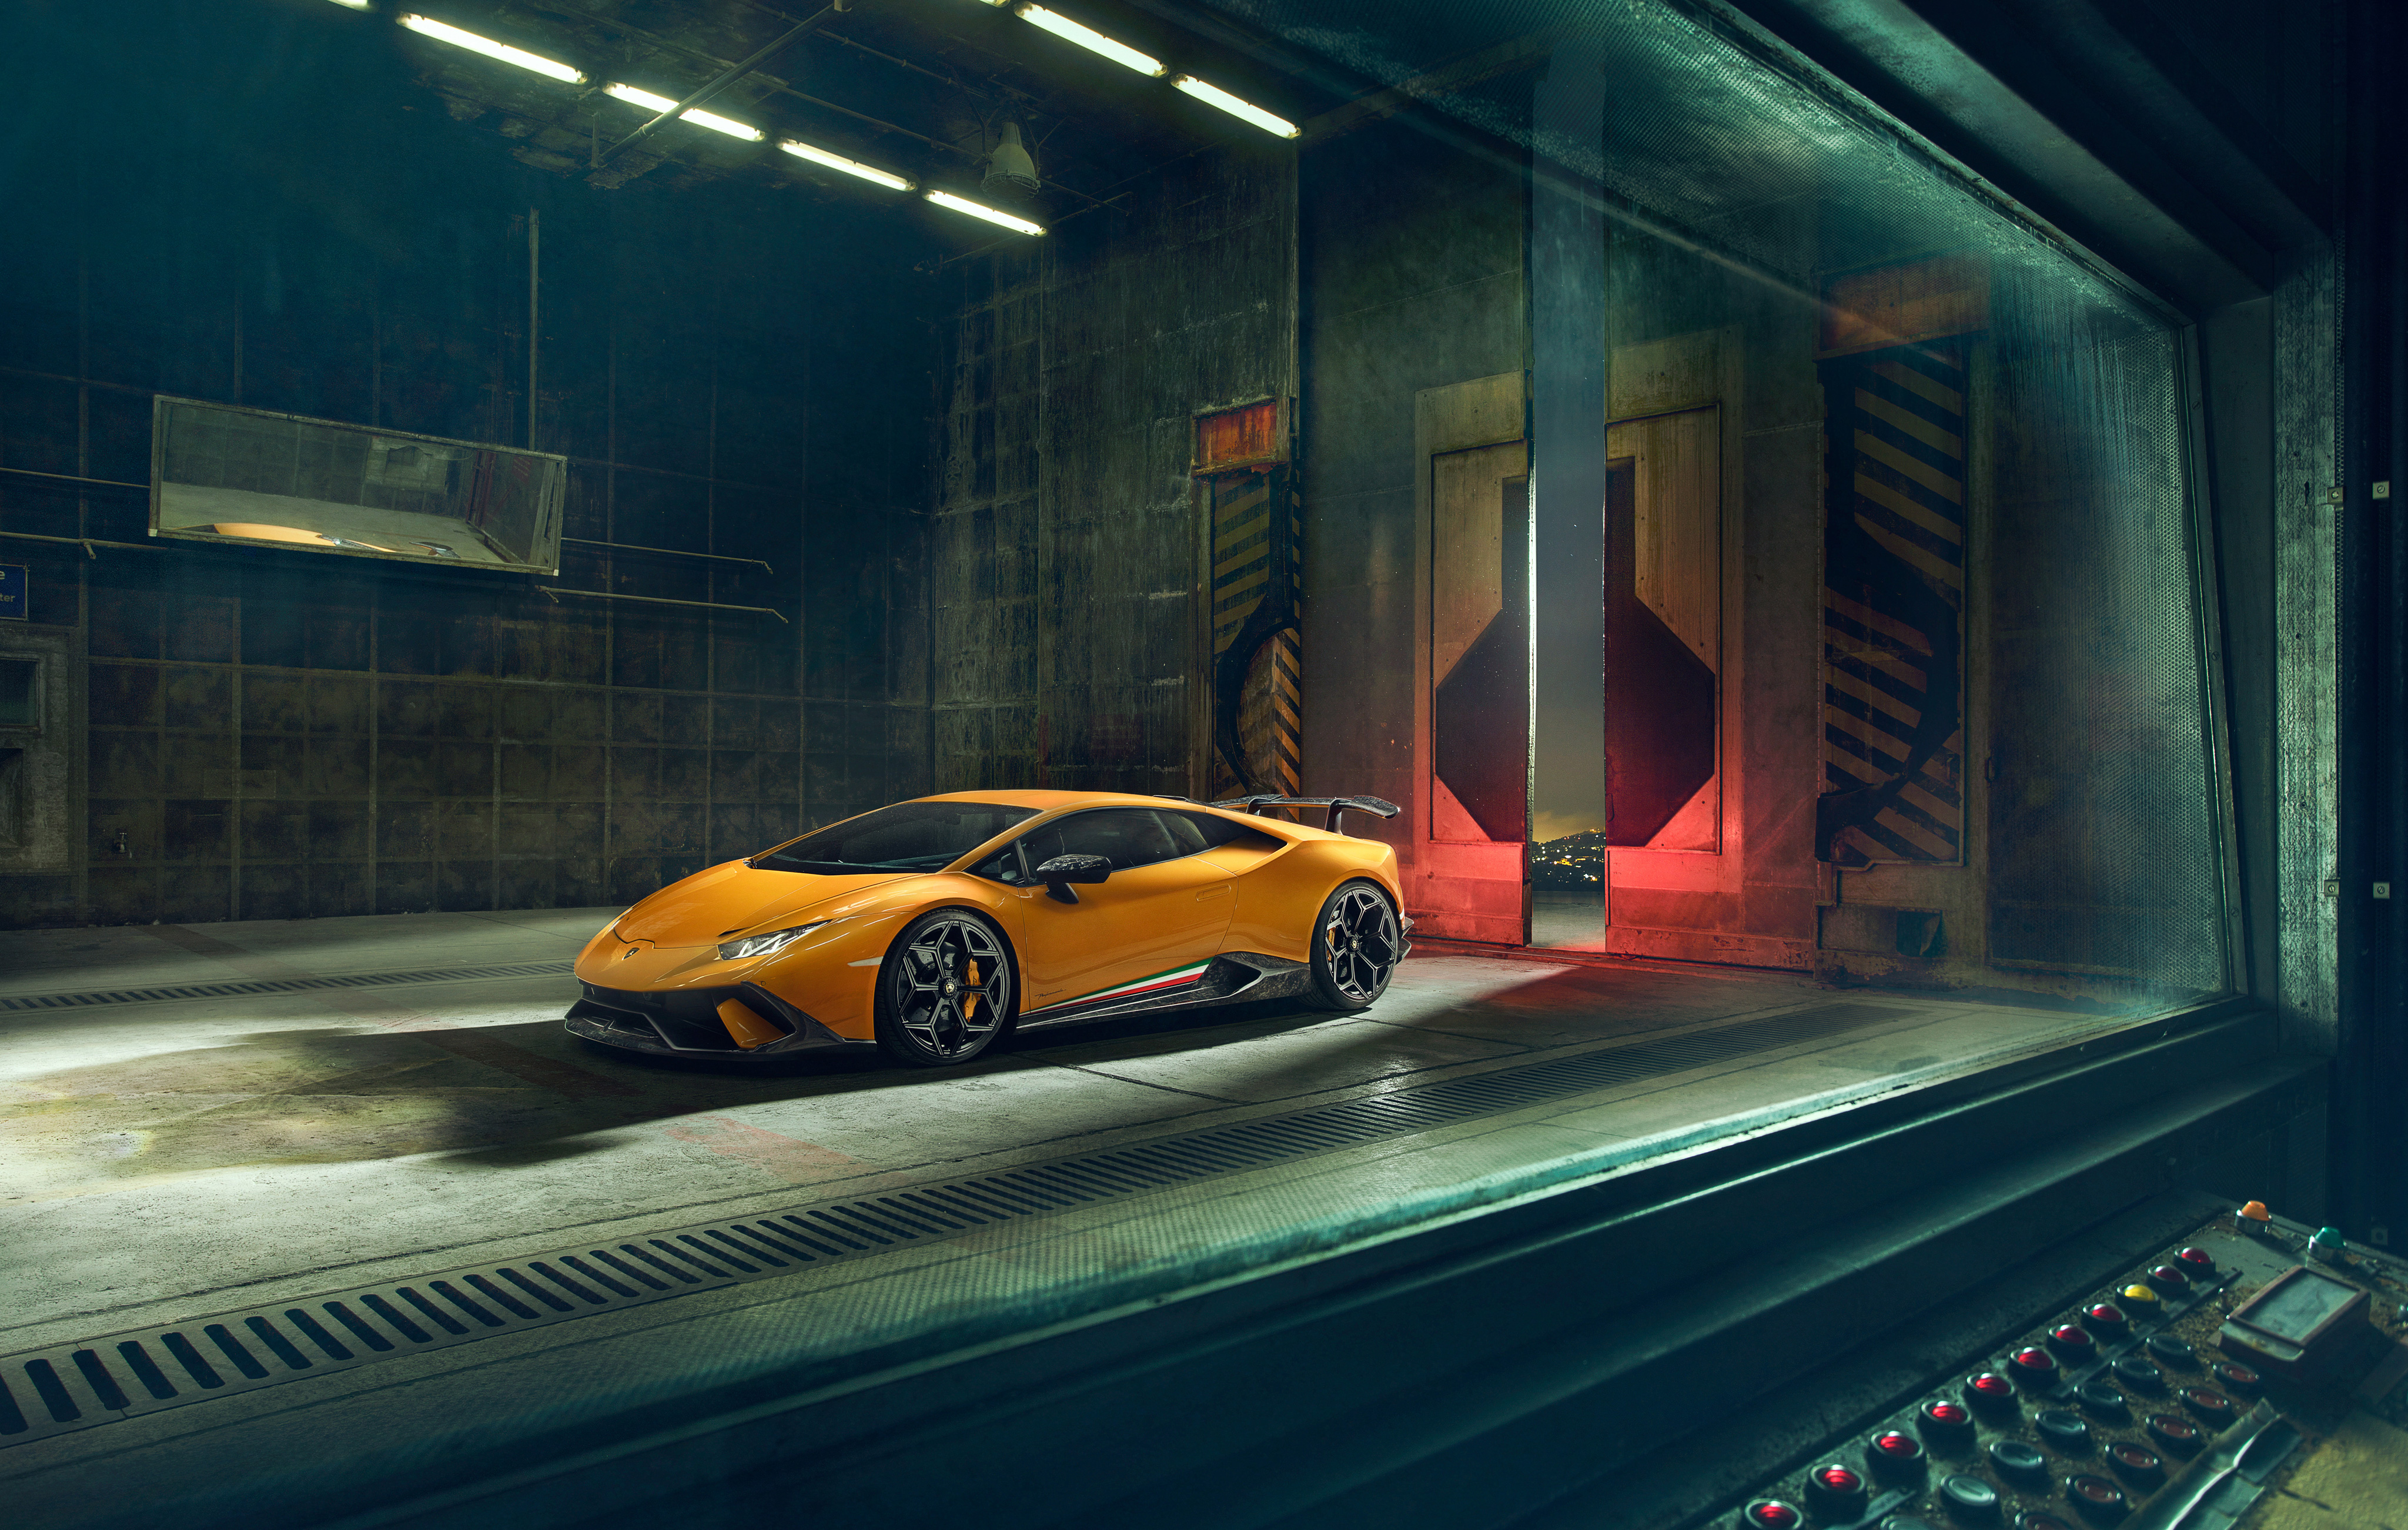 Фото Lamborghini Huracan Performante, желтый, подземка, Lamborghini Huracan, Ламборгини, автомобили 2018 года, машины - бесплатные картинки на Fonwall